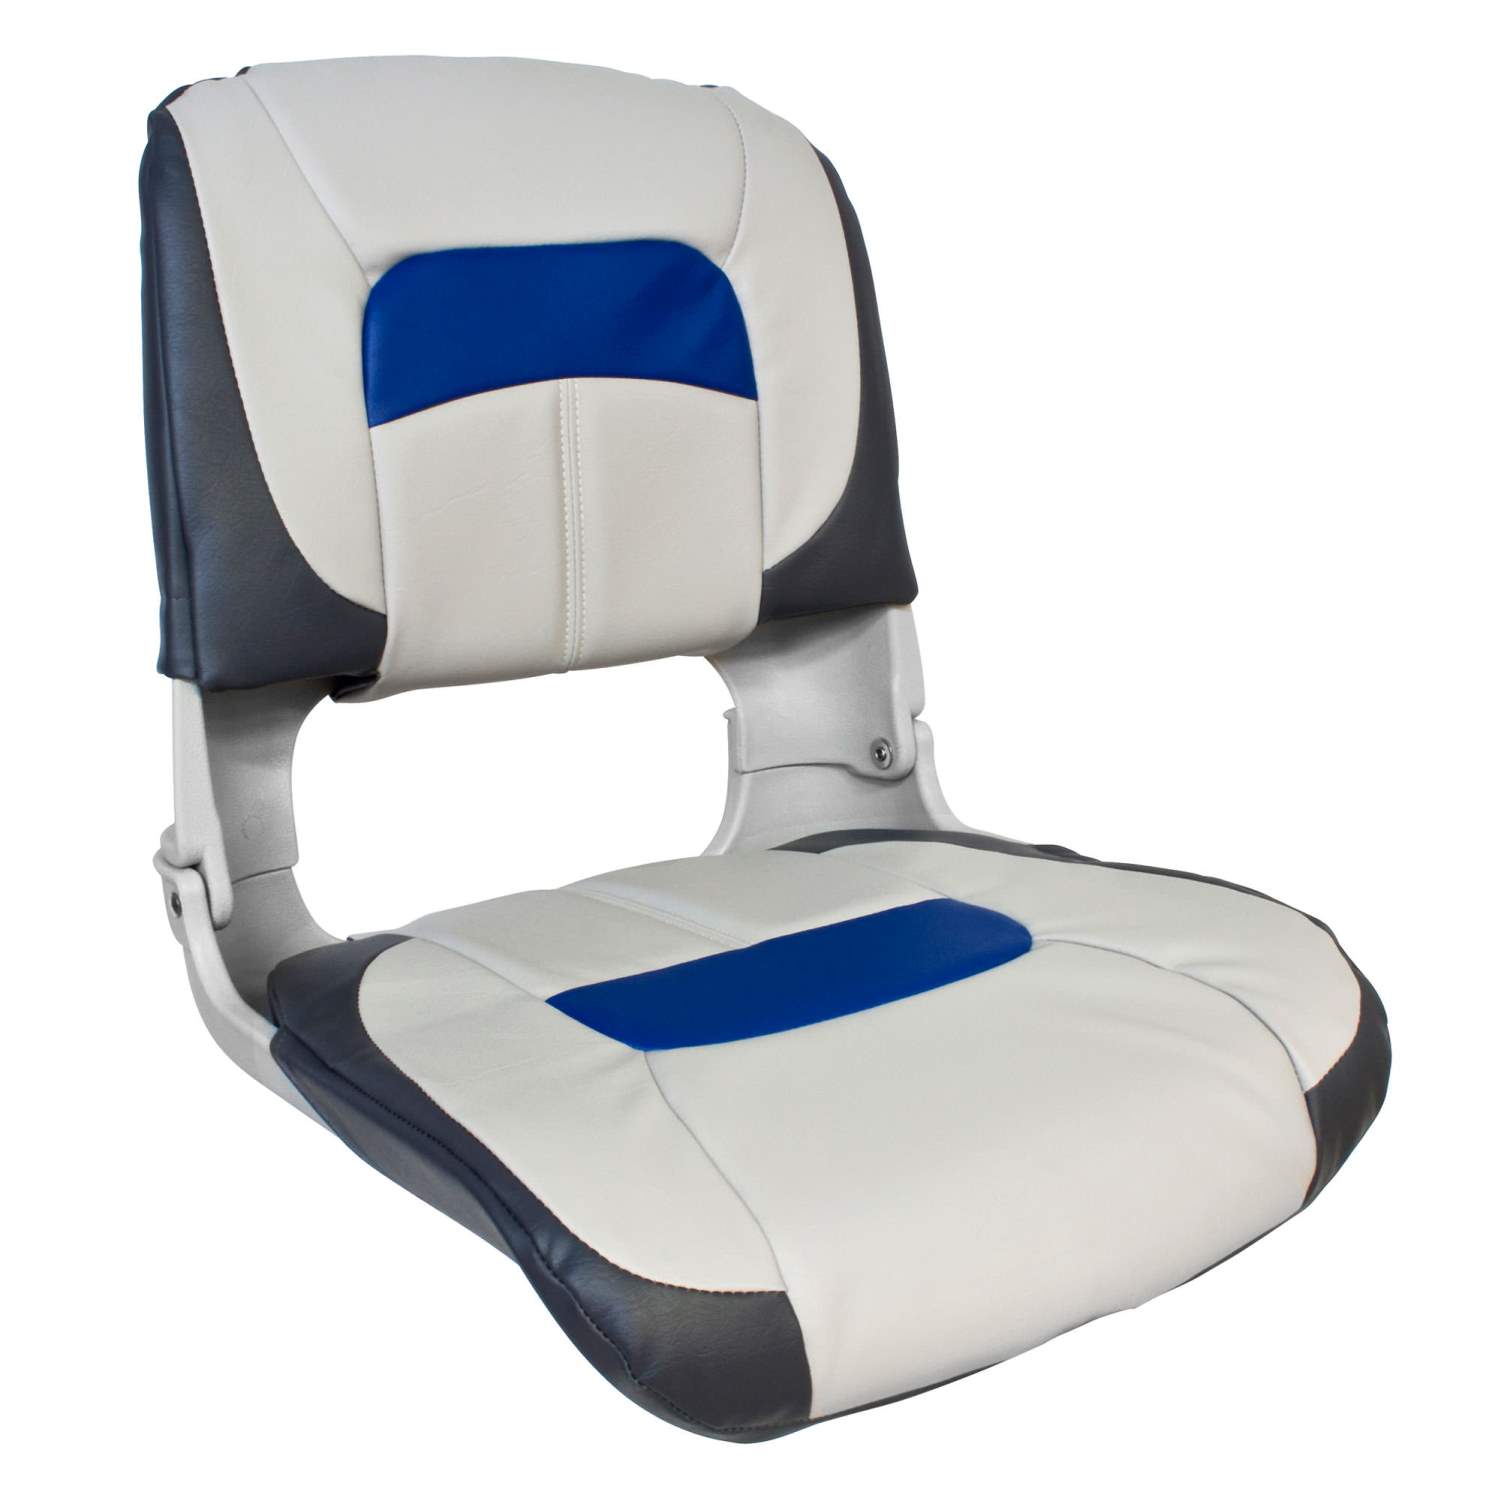 Waterside | Bootssitz | Luxus High Back Comfort Plus | Blau - Weiß - Grau | 47x46x50cm | Kunststoff | Bootssitz